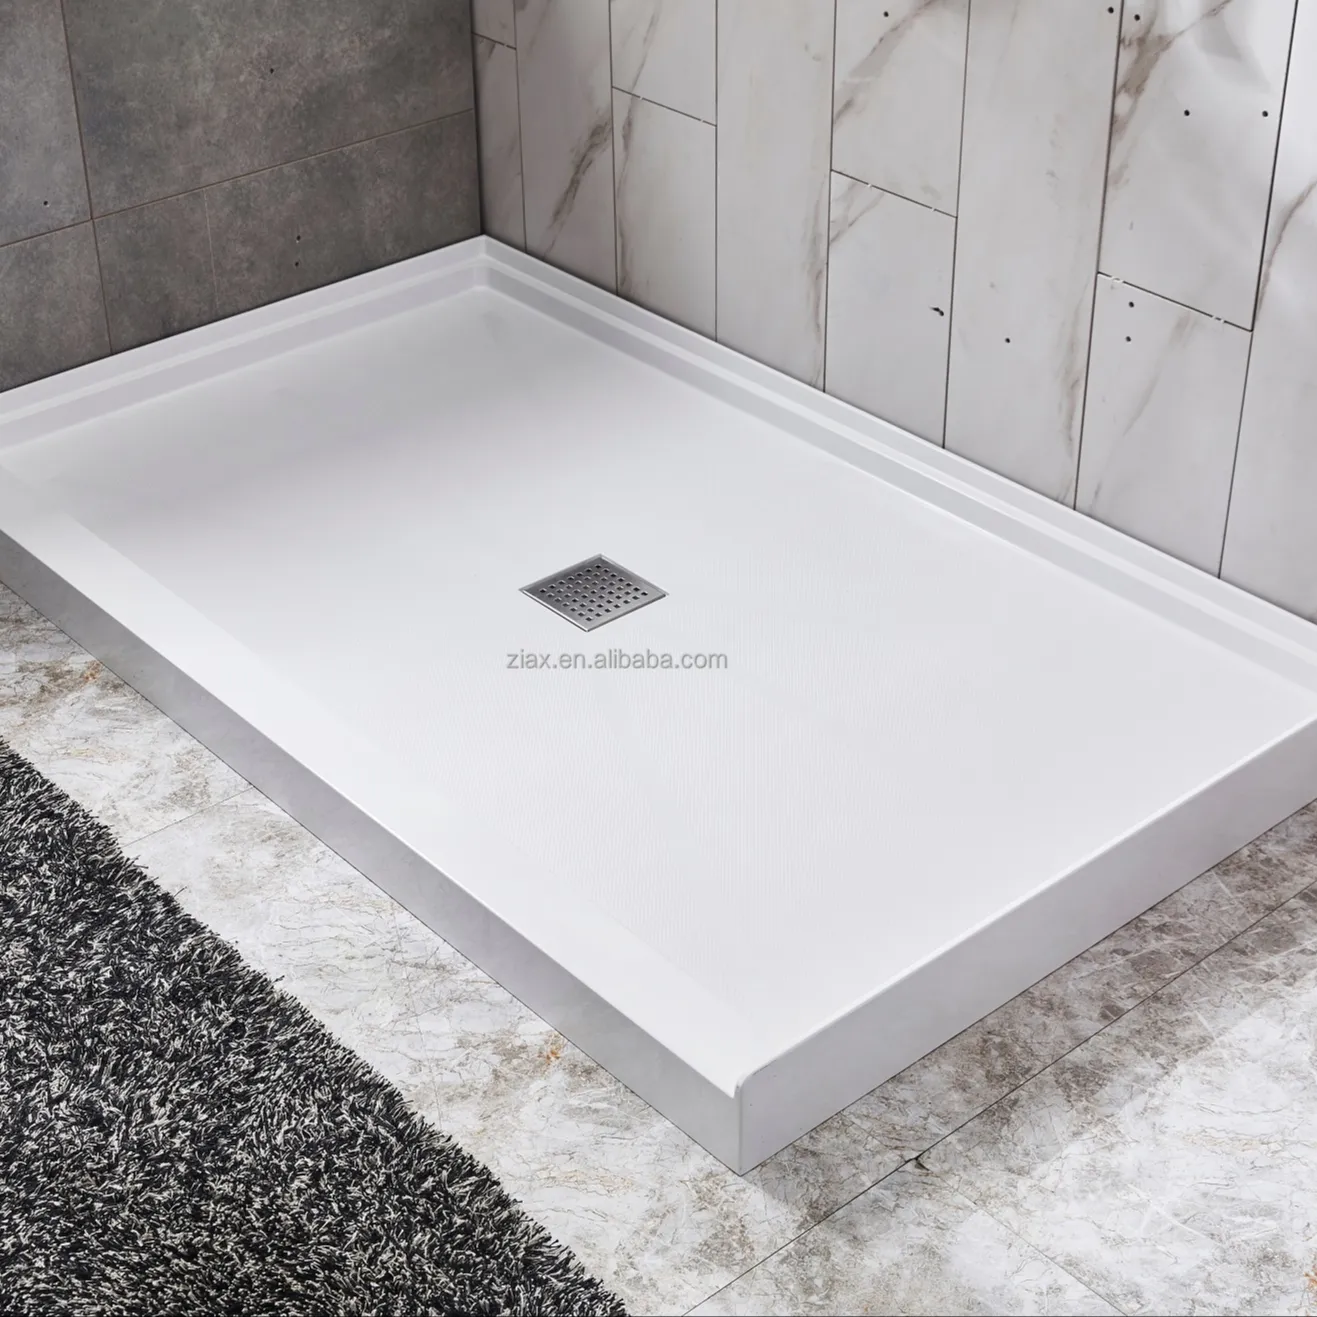 Ziax-bandeja de ducha antideslizante de 650mm con cubierta de metal, bandeja de ducha moderna de 60x40, drenaje ABS, fácil de limpiar, 650mm, para Baño